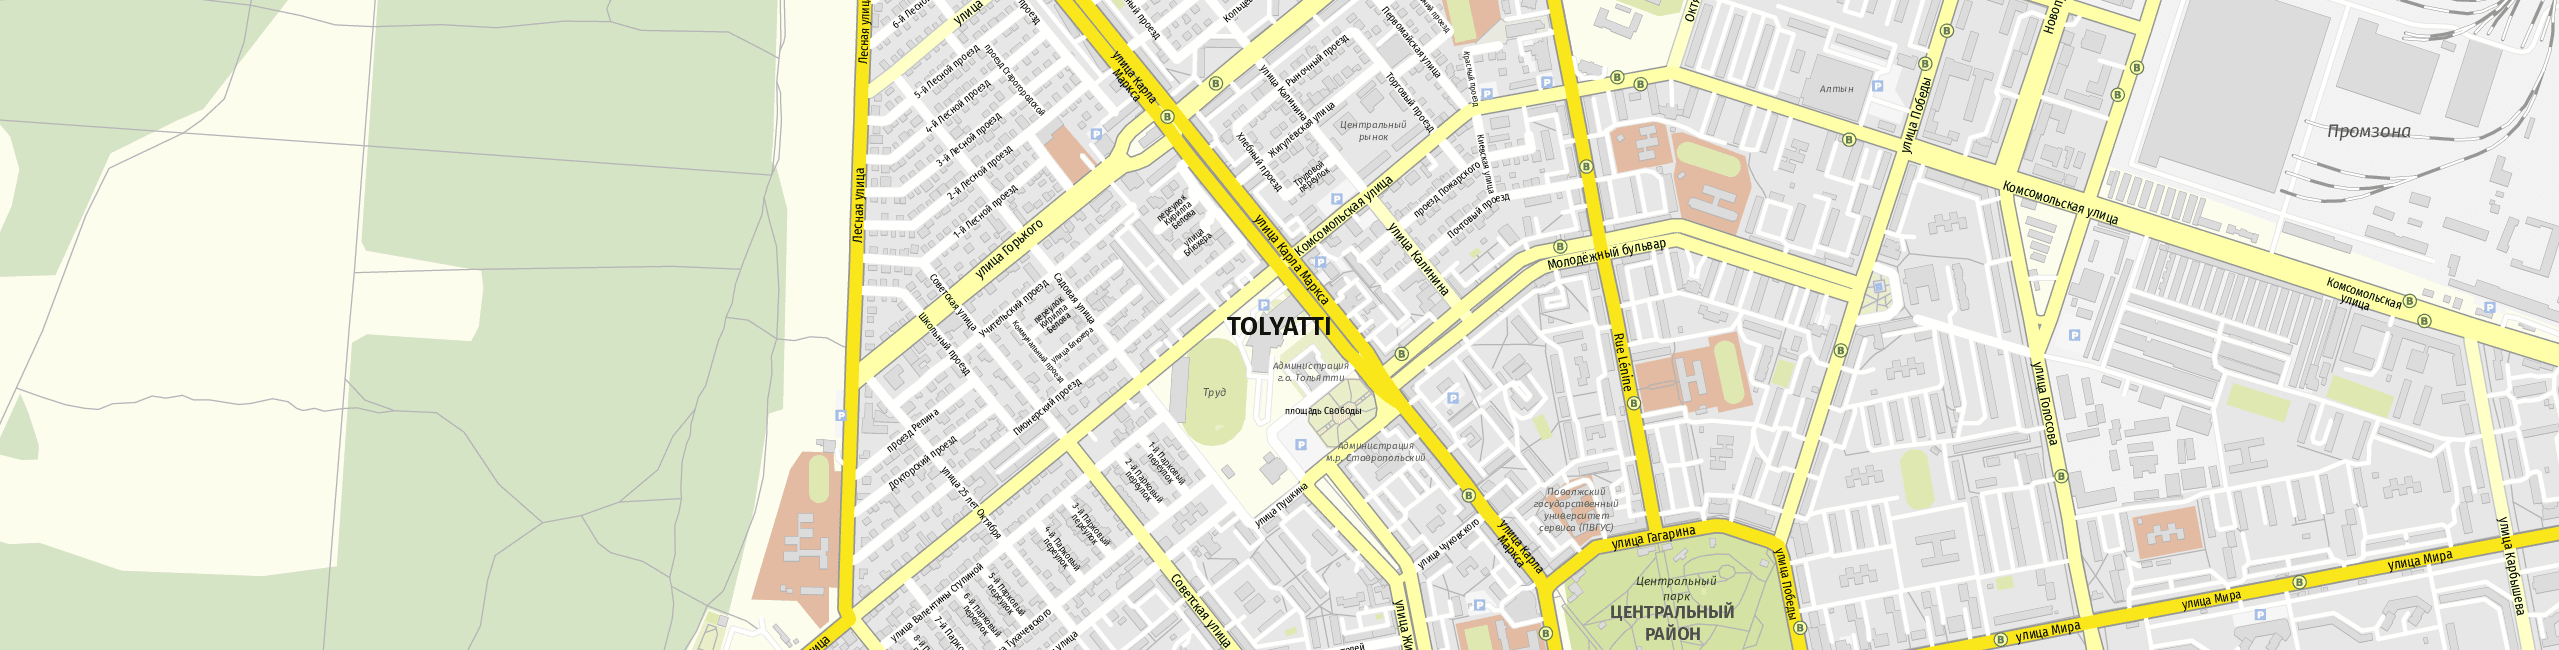 Stadtplan Tolyatti zum Downloaden.